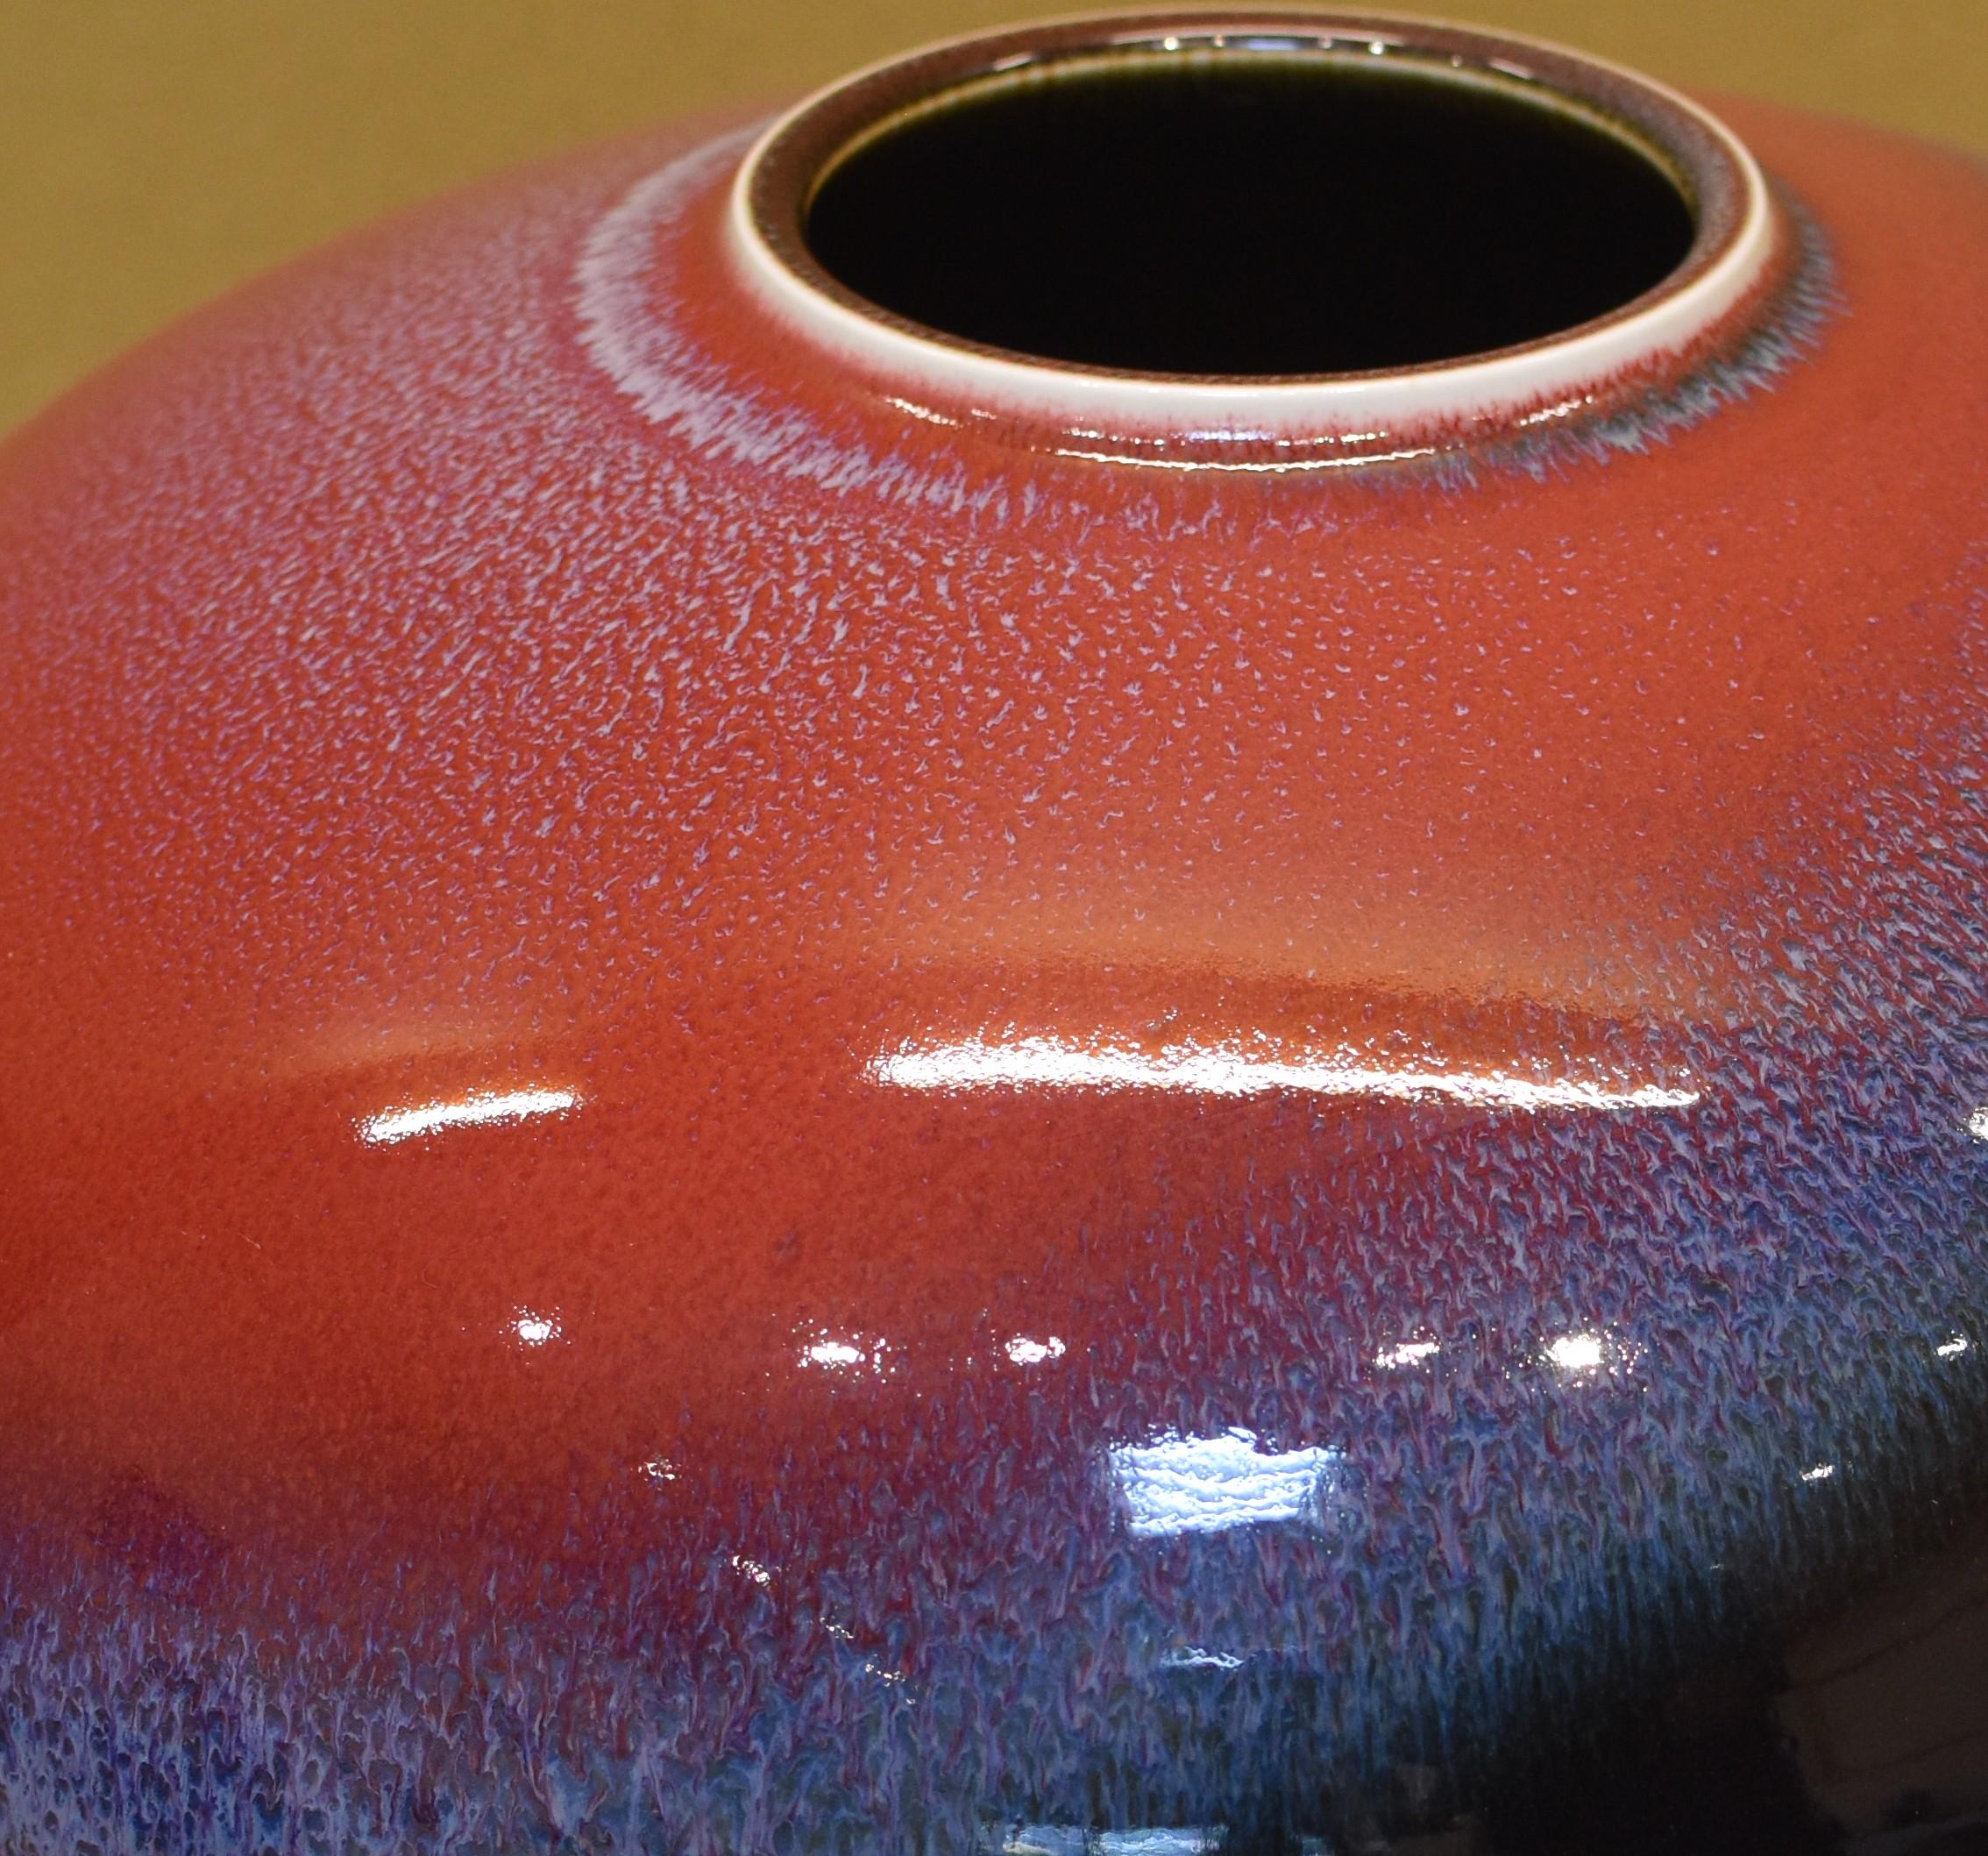 Magnifique vase en porcelaine décorative japonaise contemporaine de collection au charme exceptionnel, une pièce d'exposition, superbement émaillée à la main en bleu, rouge et noir vifs sur un corps magnifiquement formé, la signature de l'artiste